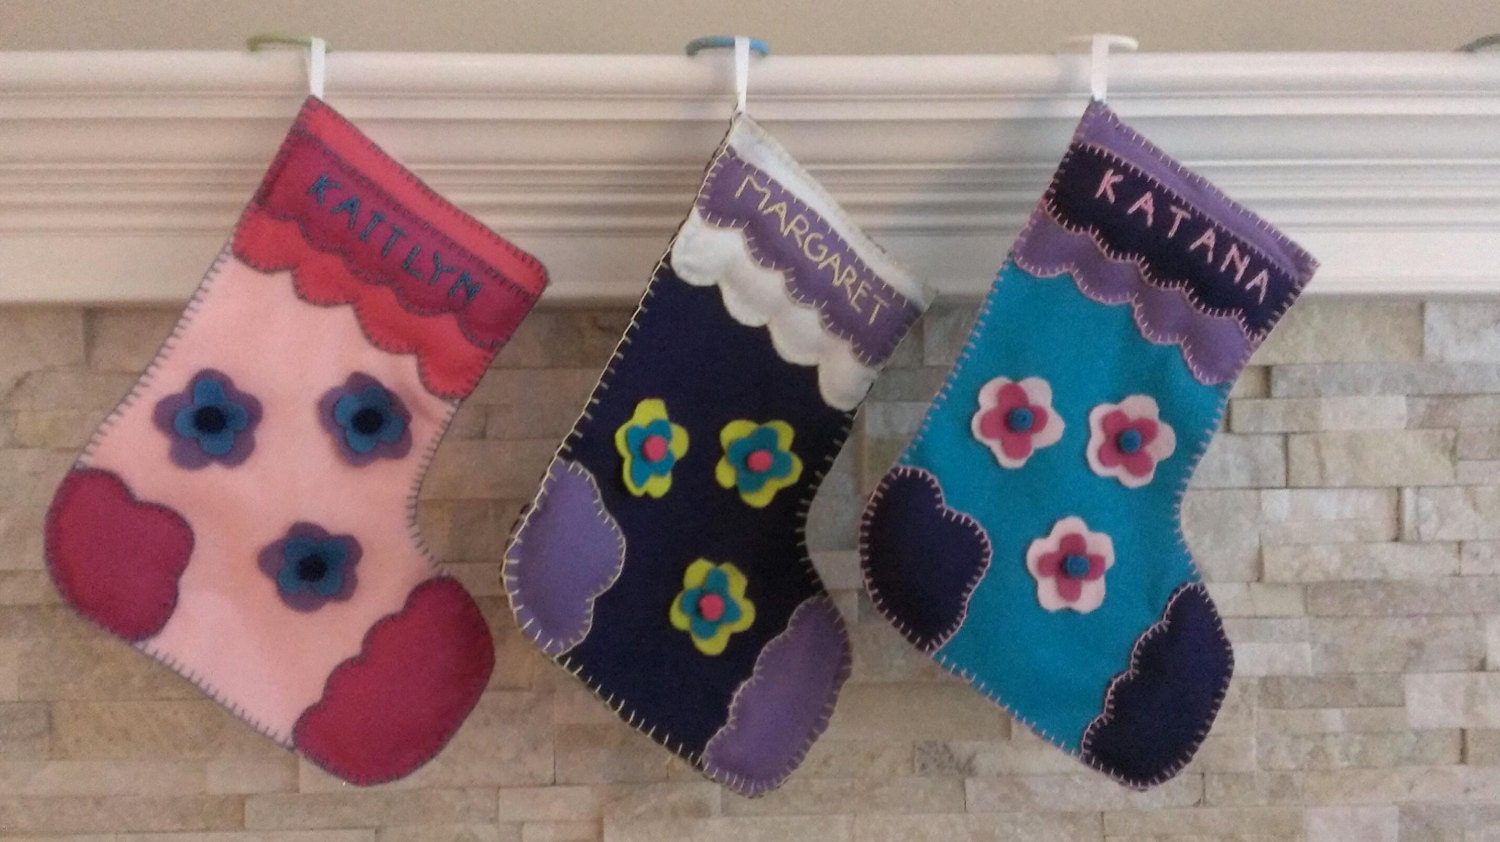 Felt Christmas stockings - set of 3 - felt stockings Christmas decorations - personalized stockings